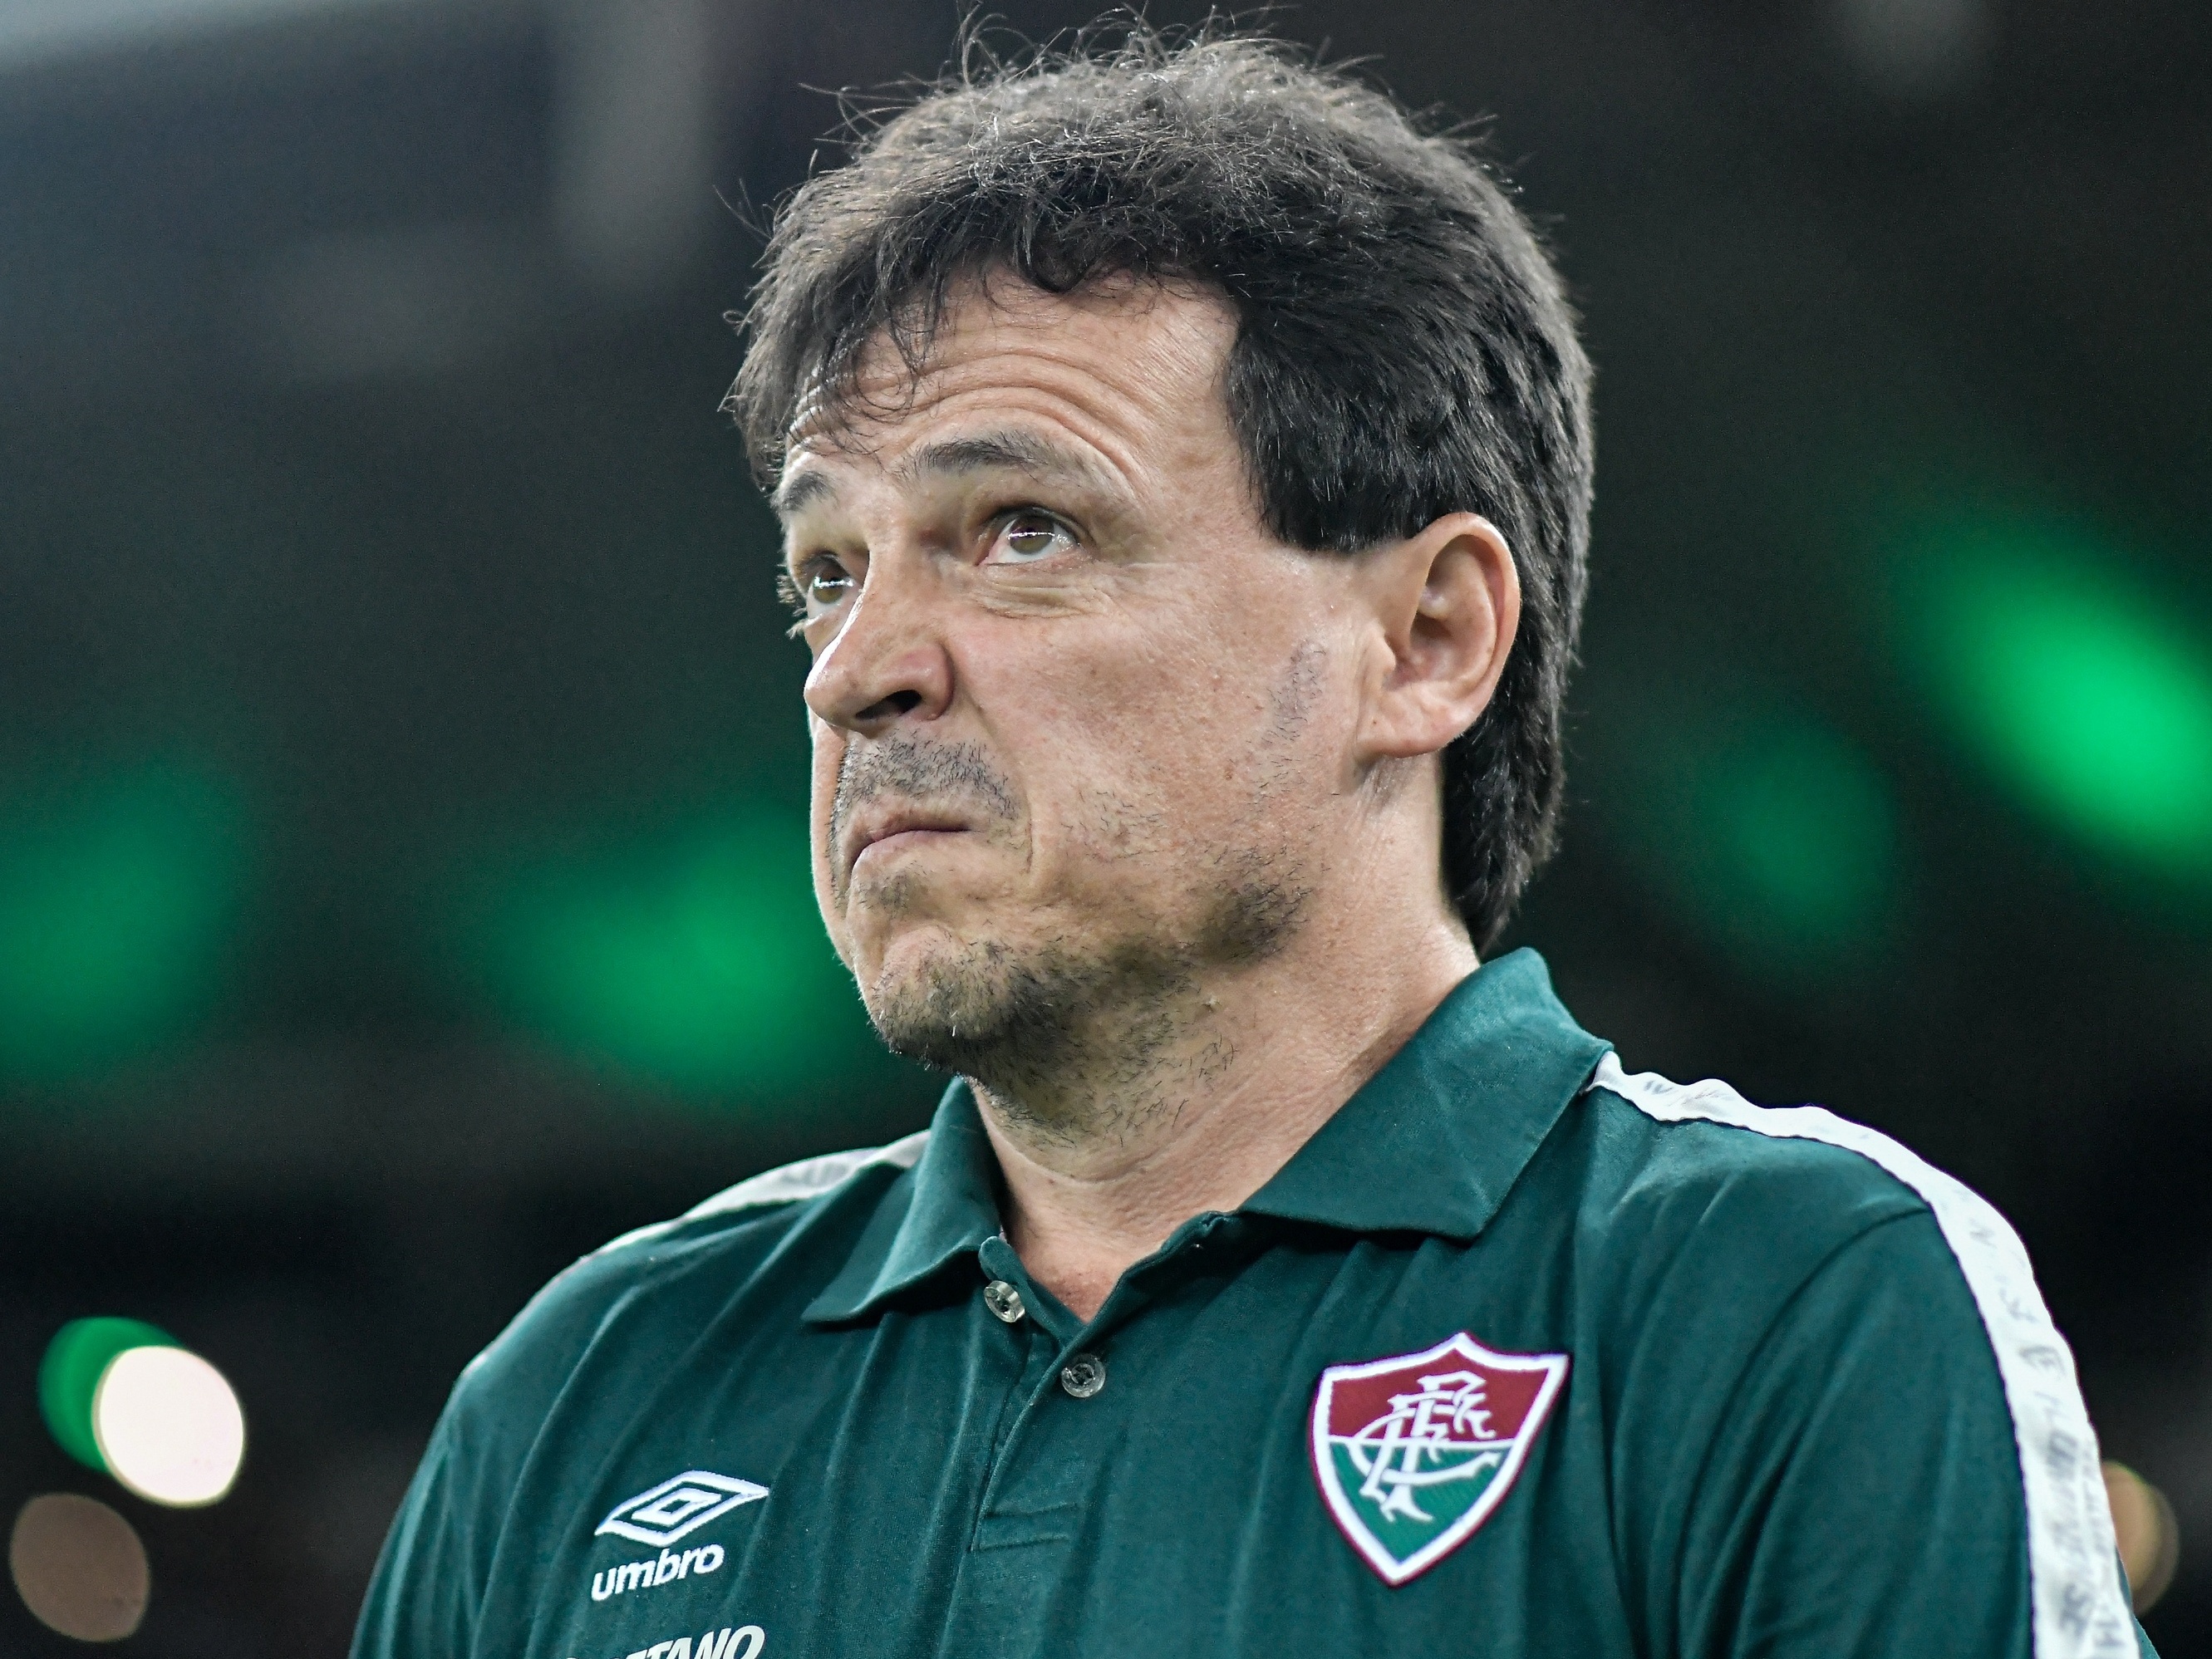 Diniz avalia que Fluminense 'conseguiu fazer um grande jogo' no empate com  Palmeiras - 08/05/2022 - UOL Esporte